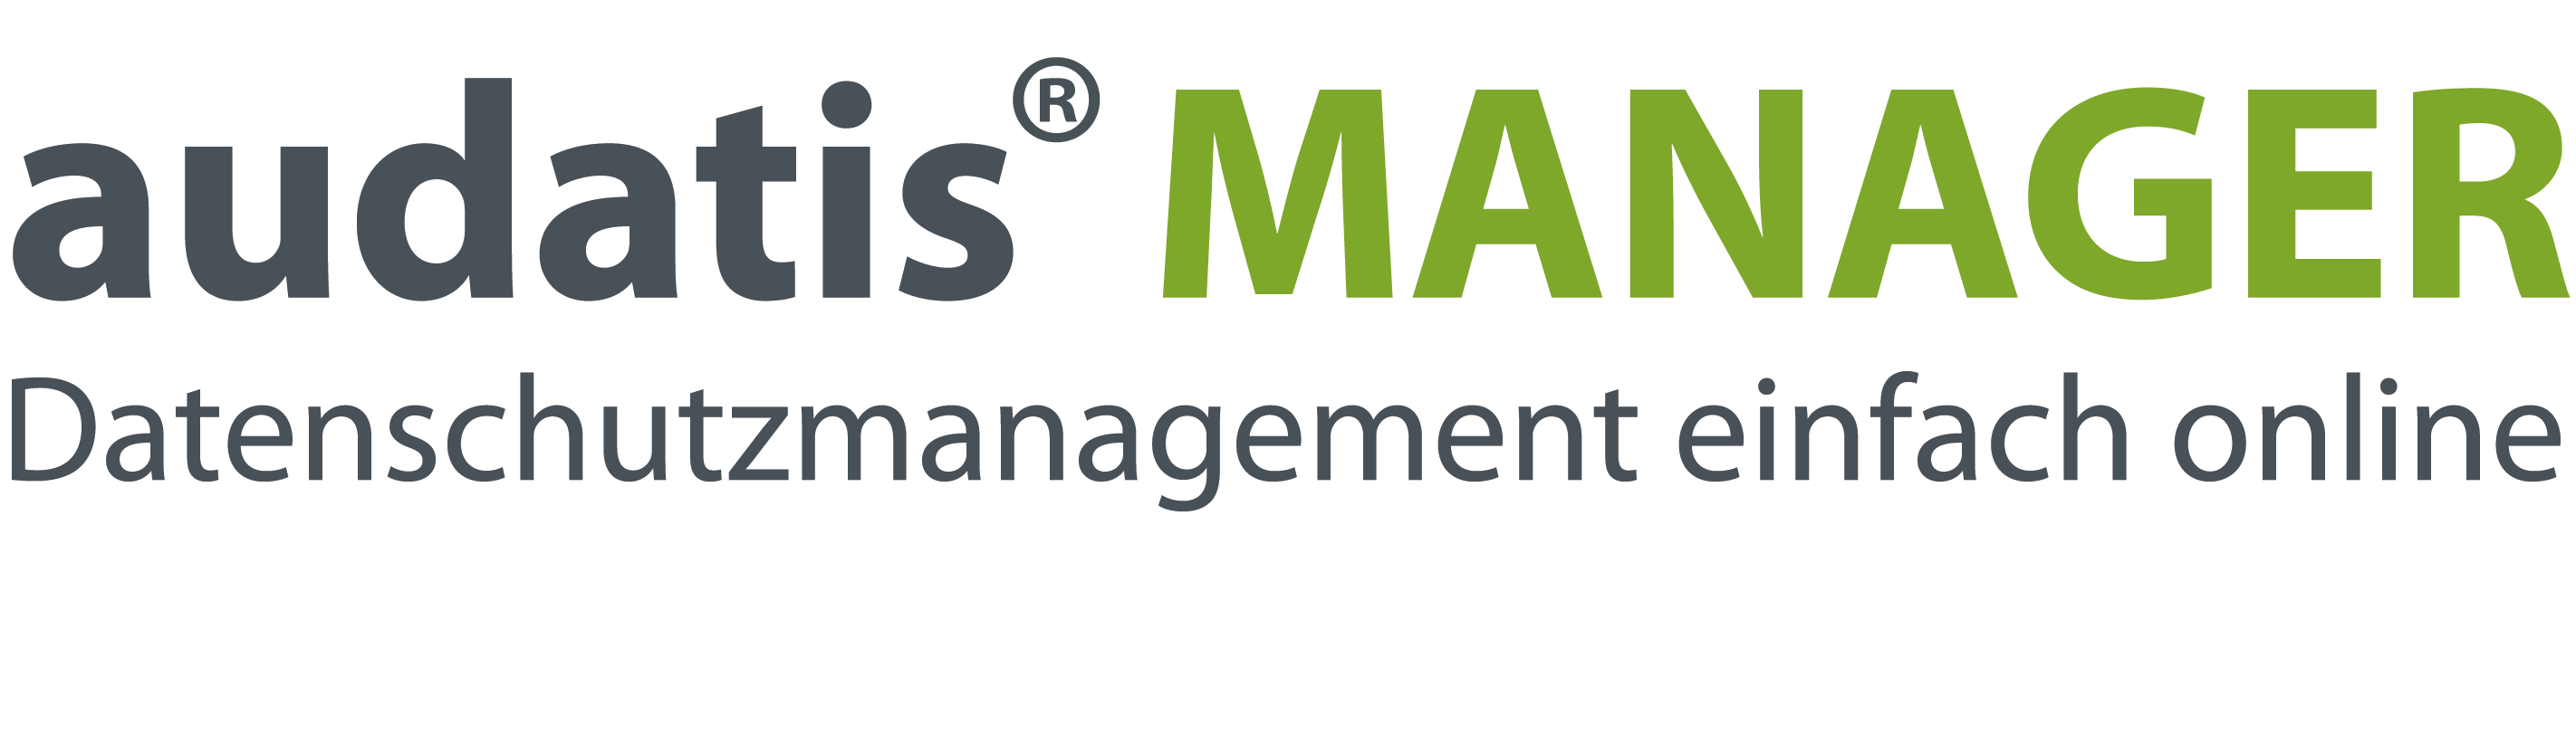 audatis_MANAGER_Logo